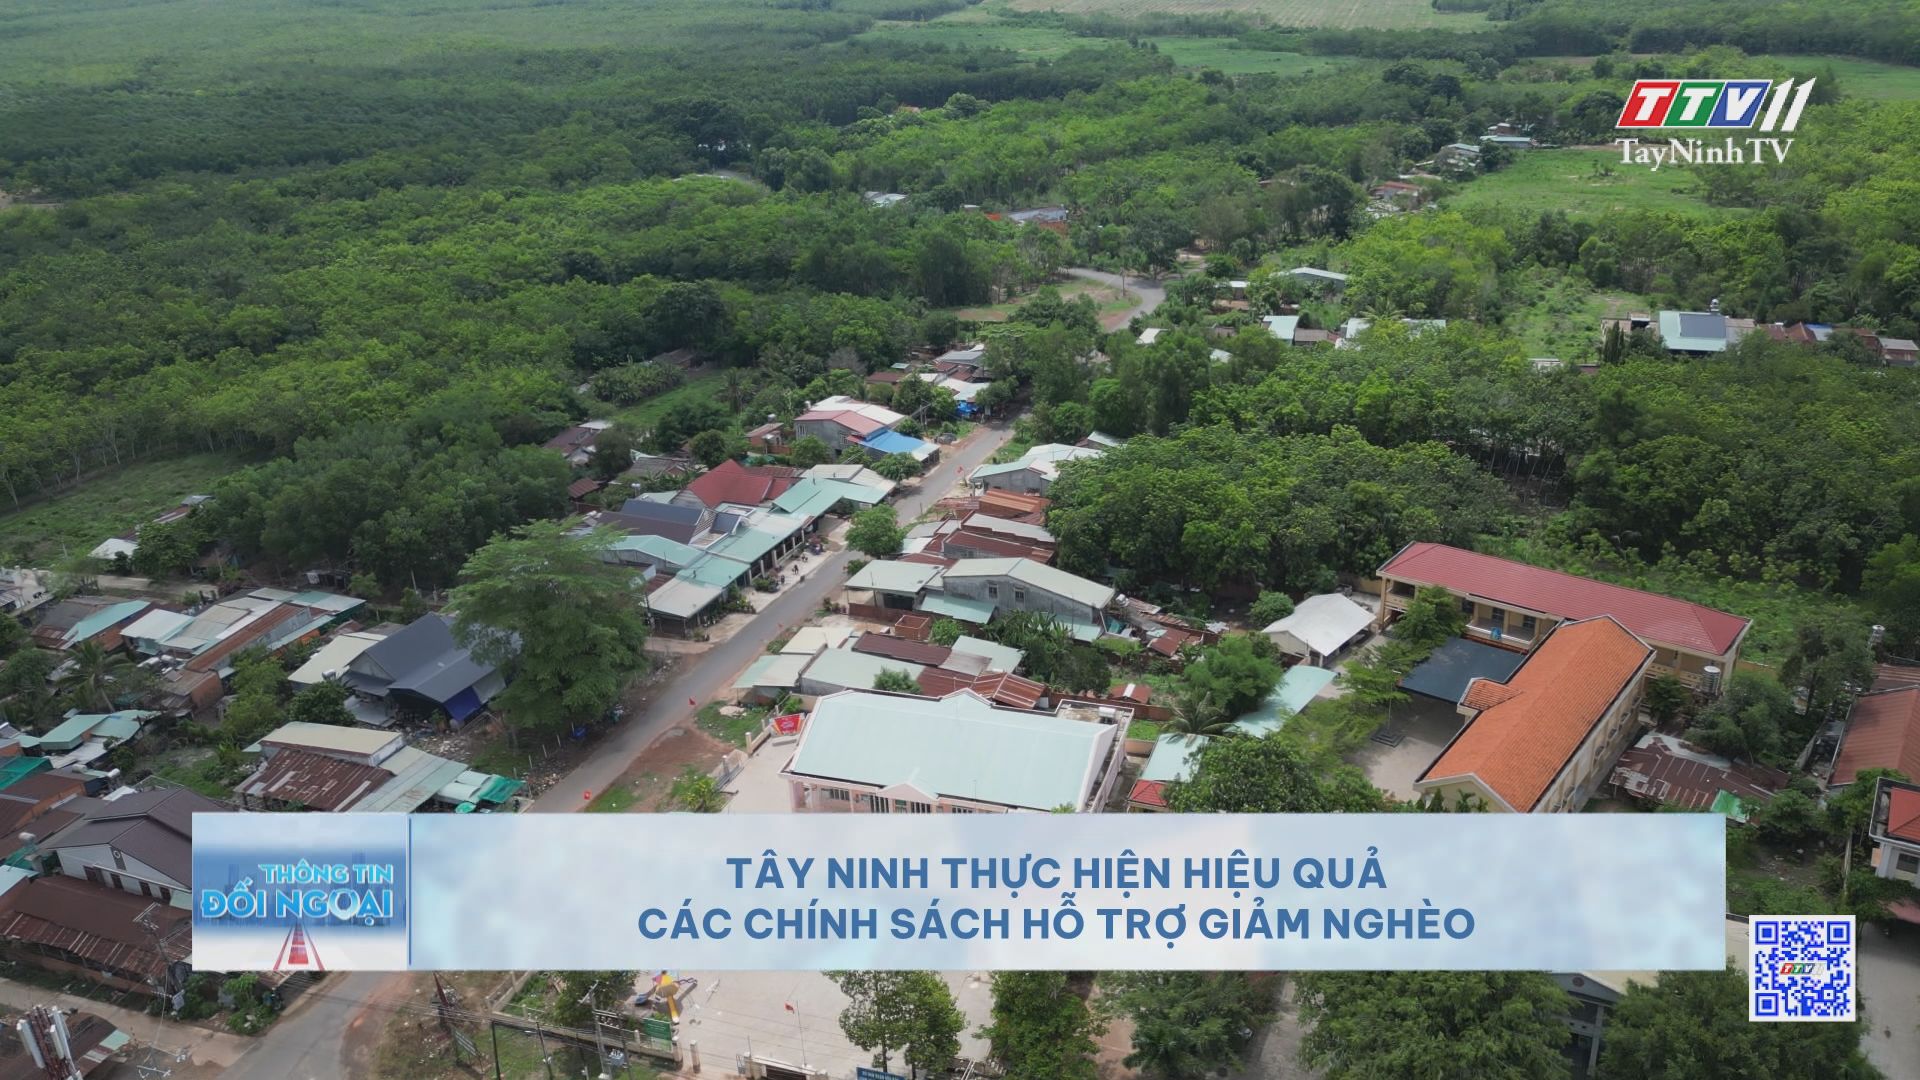 Tây Ninh thực hiện hiệu quả các chính sách hỗ trợ giảm nghèo | THÔNG TIN ĐỐI NGOẠI | TayNinhTVDVC